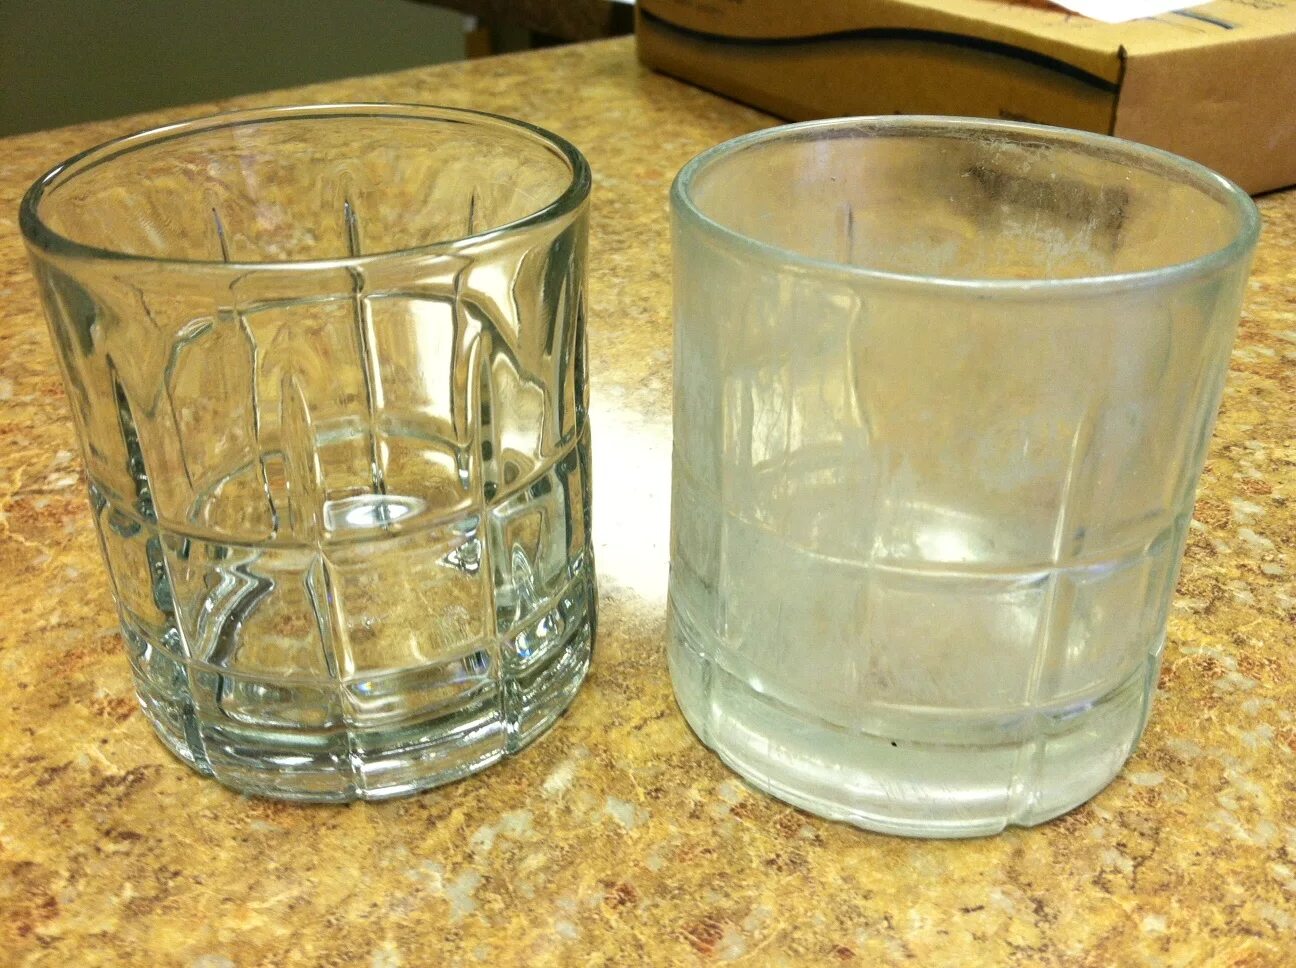 Жесткая вода. Разводы на посуде. Известковый налет на стеклянной посуде. Жесткая вода на посуде. Соли мягкой воды